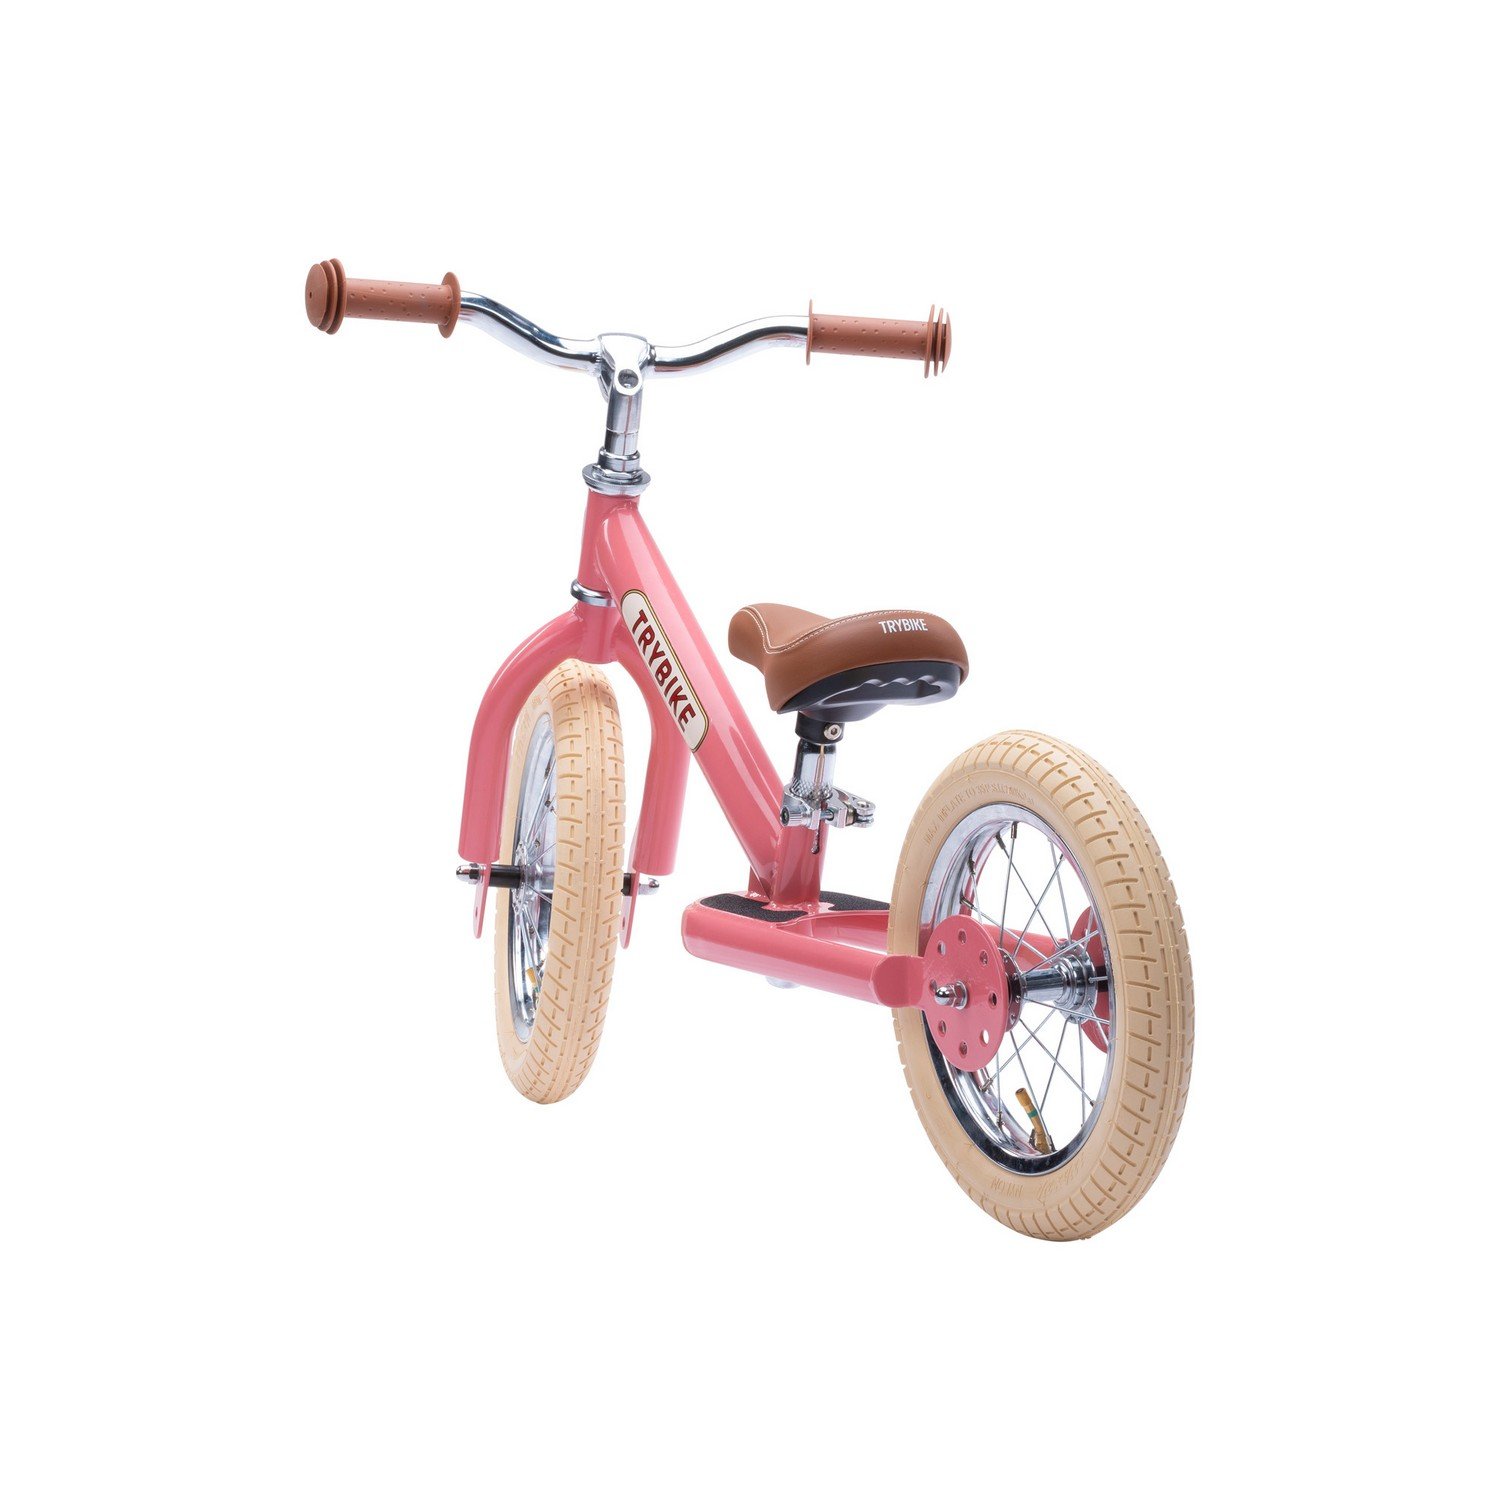 Двухколесный балансирующий велосипед Trybike steel 2 в 1, розовый (TBS-2-PNK-VIN) - фото 4